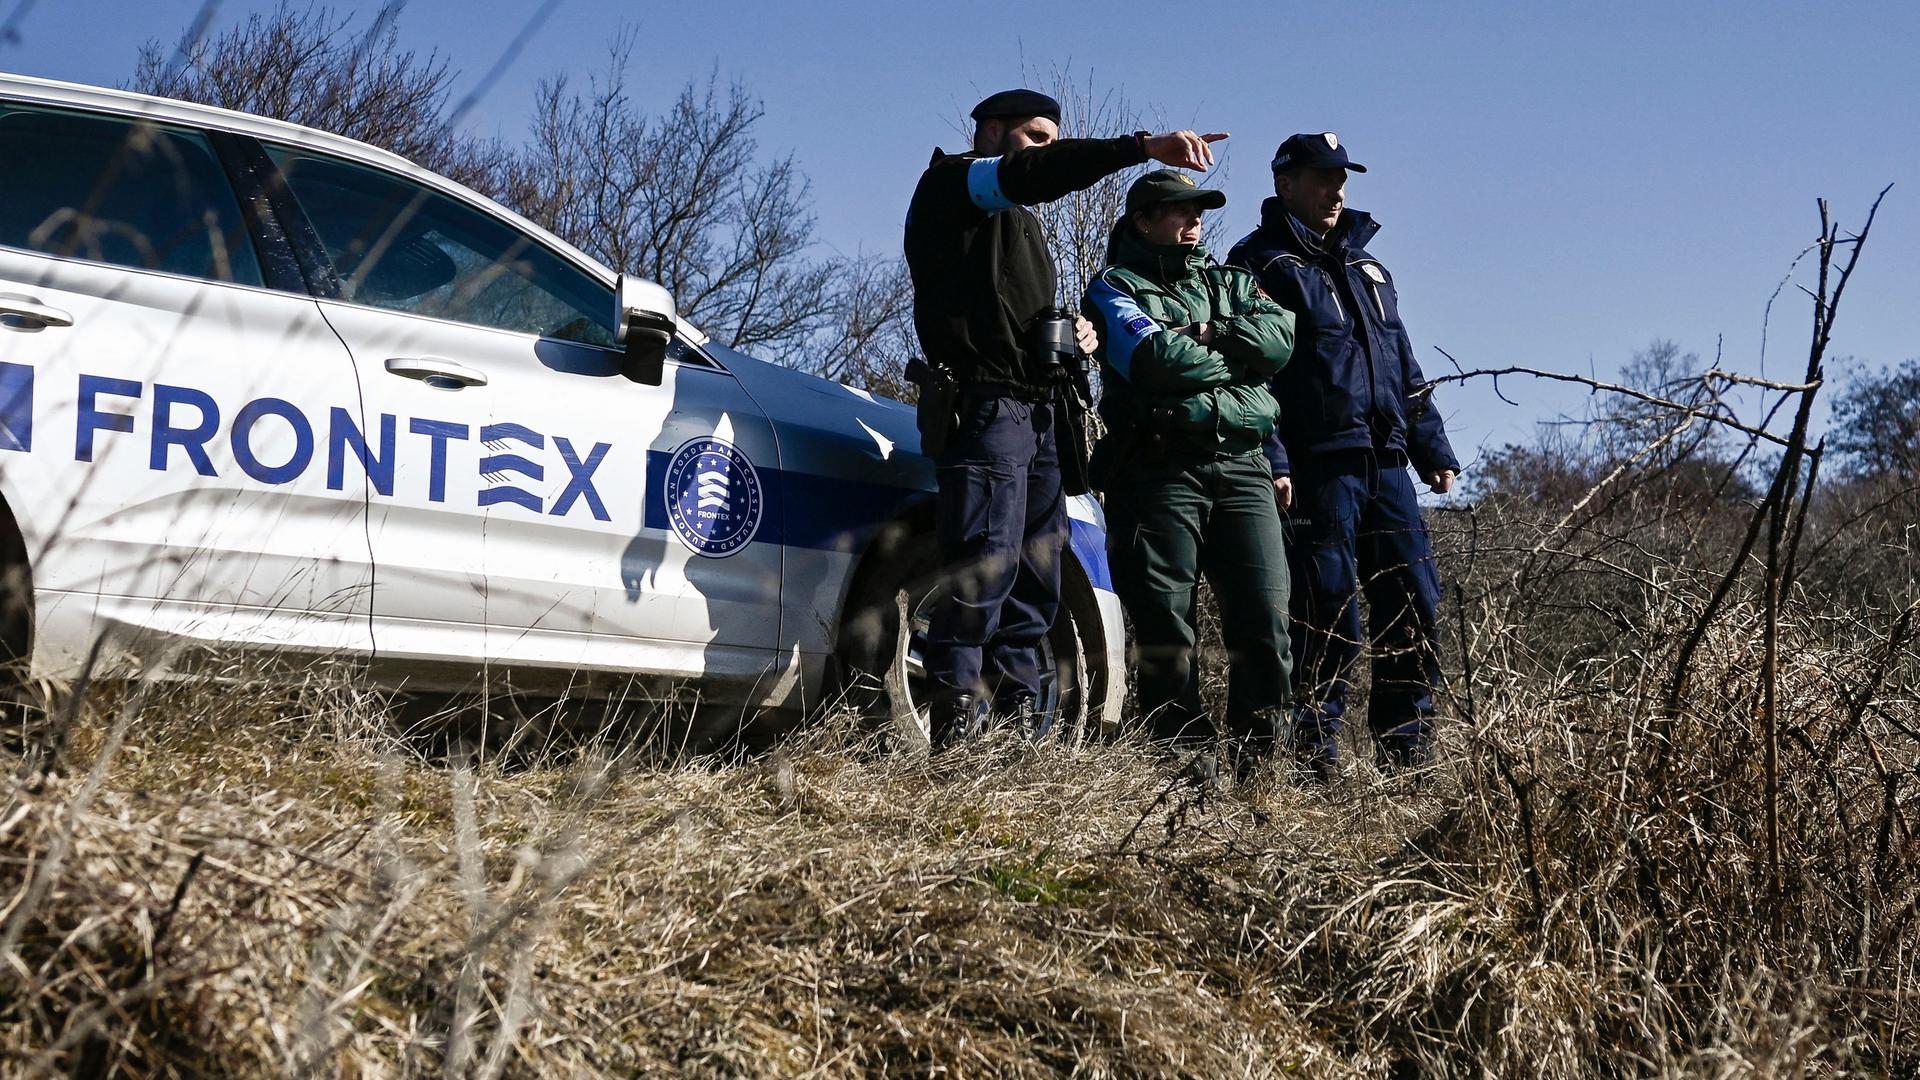 Drei uniformierte Männer stehen neben einem Wagen mit dem Frontex-Schriftzug und beobachten die Umgebung.